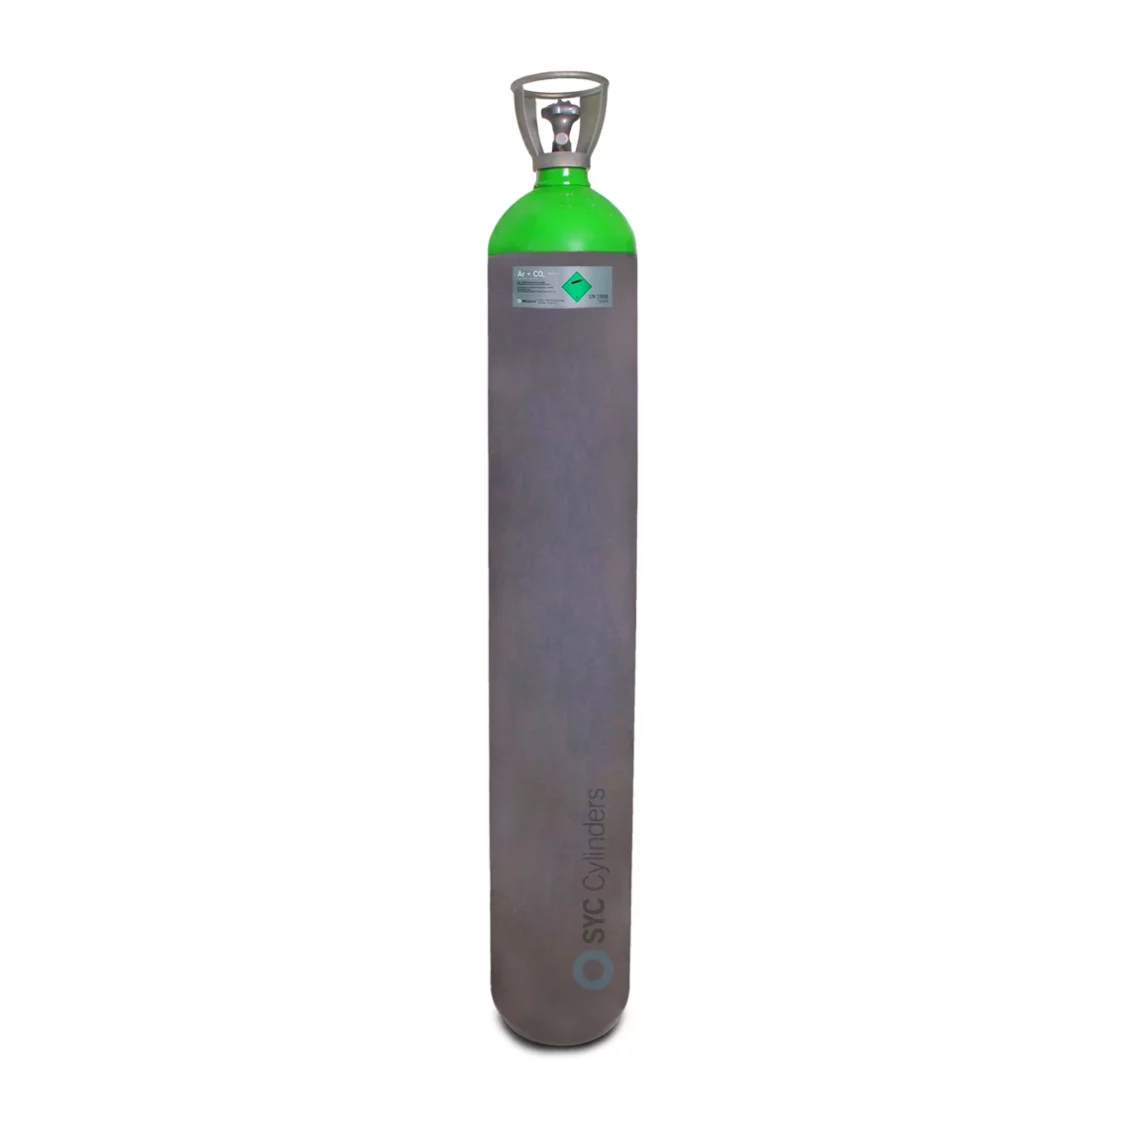 Botella 50 L cargada 230 C-15 (Argon y CO2) - SYC Cylinders